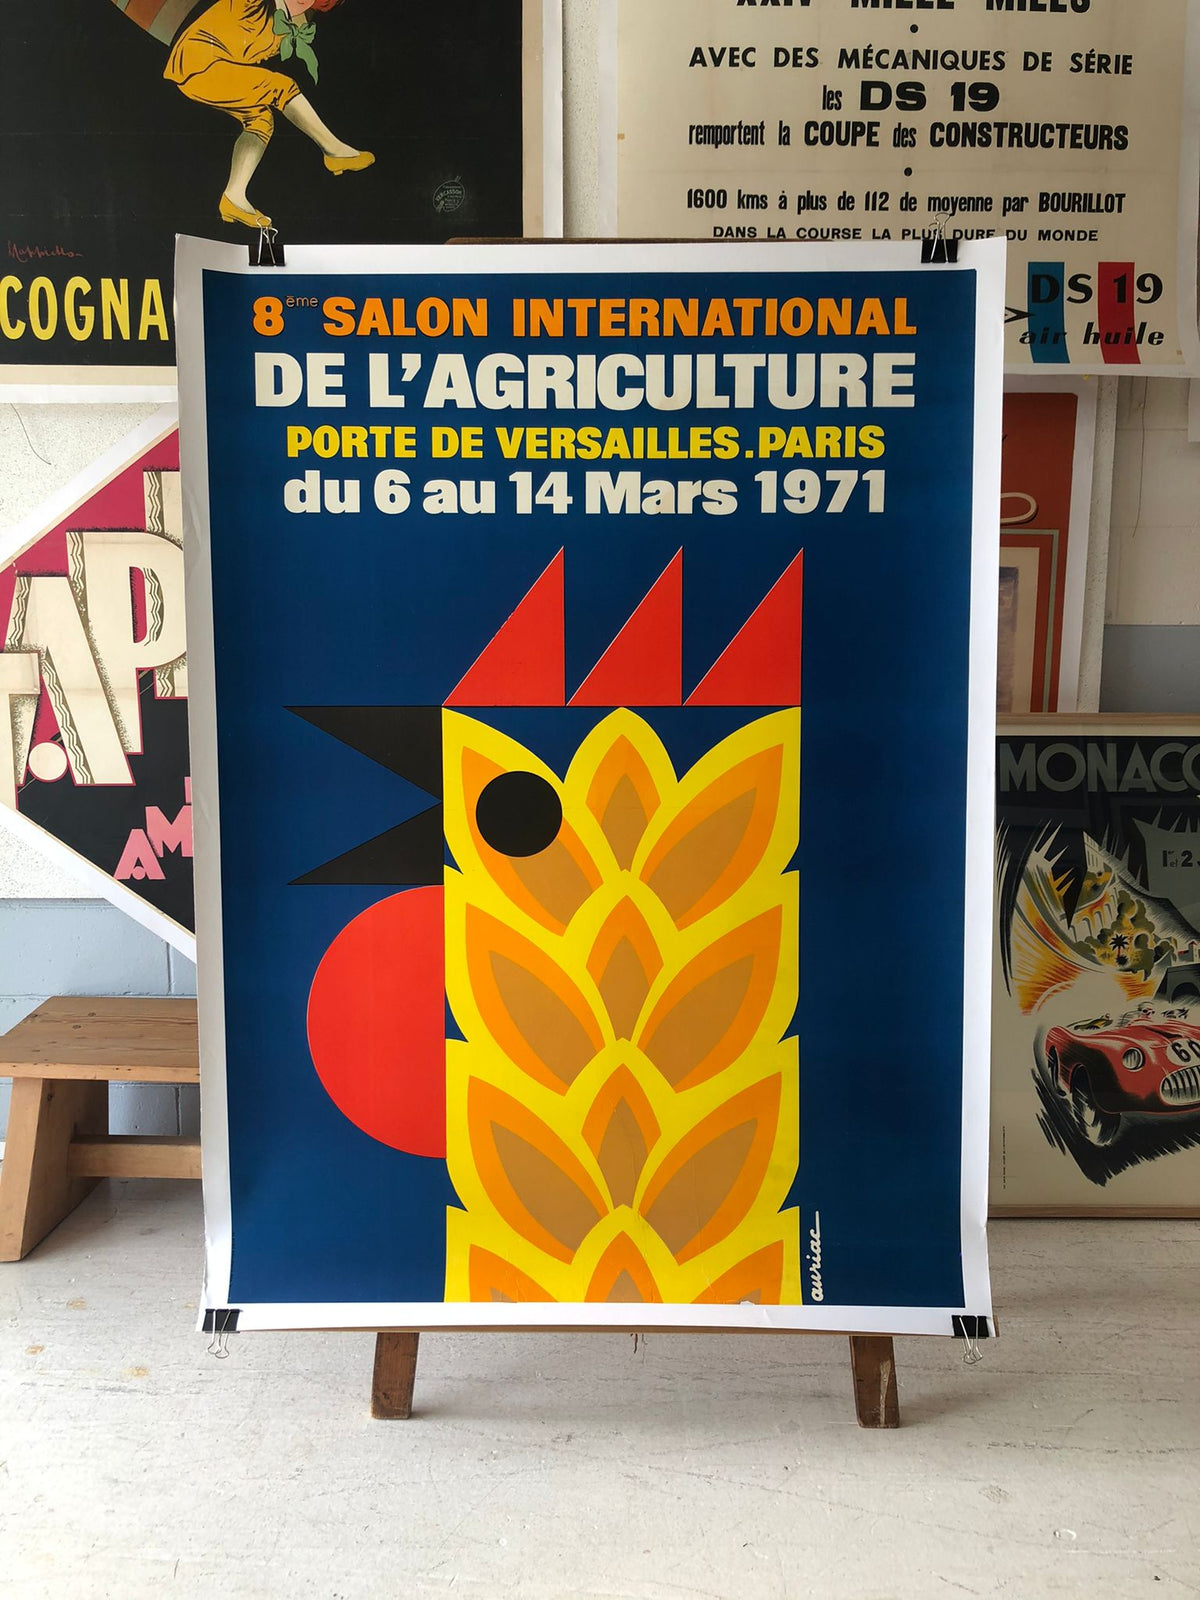 Salon International by Auriac and Omnes